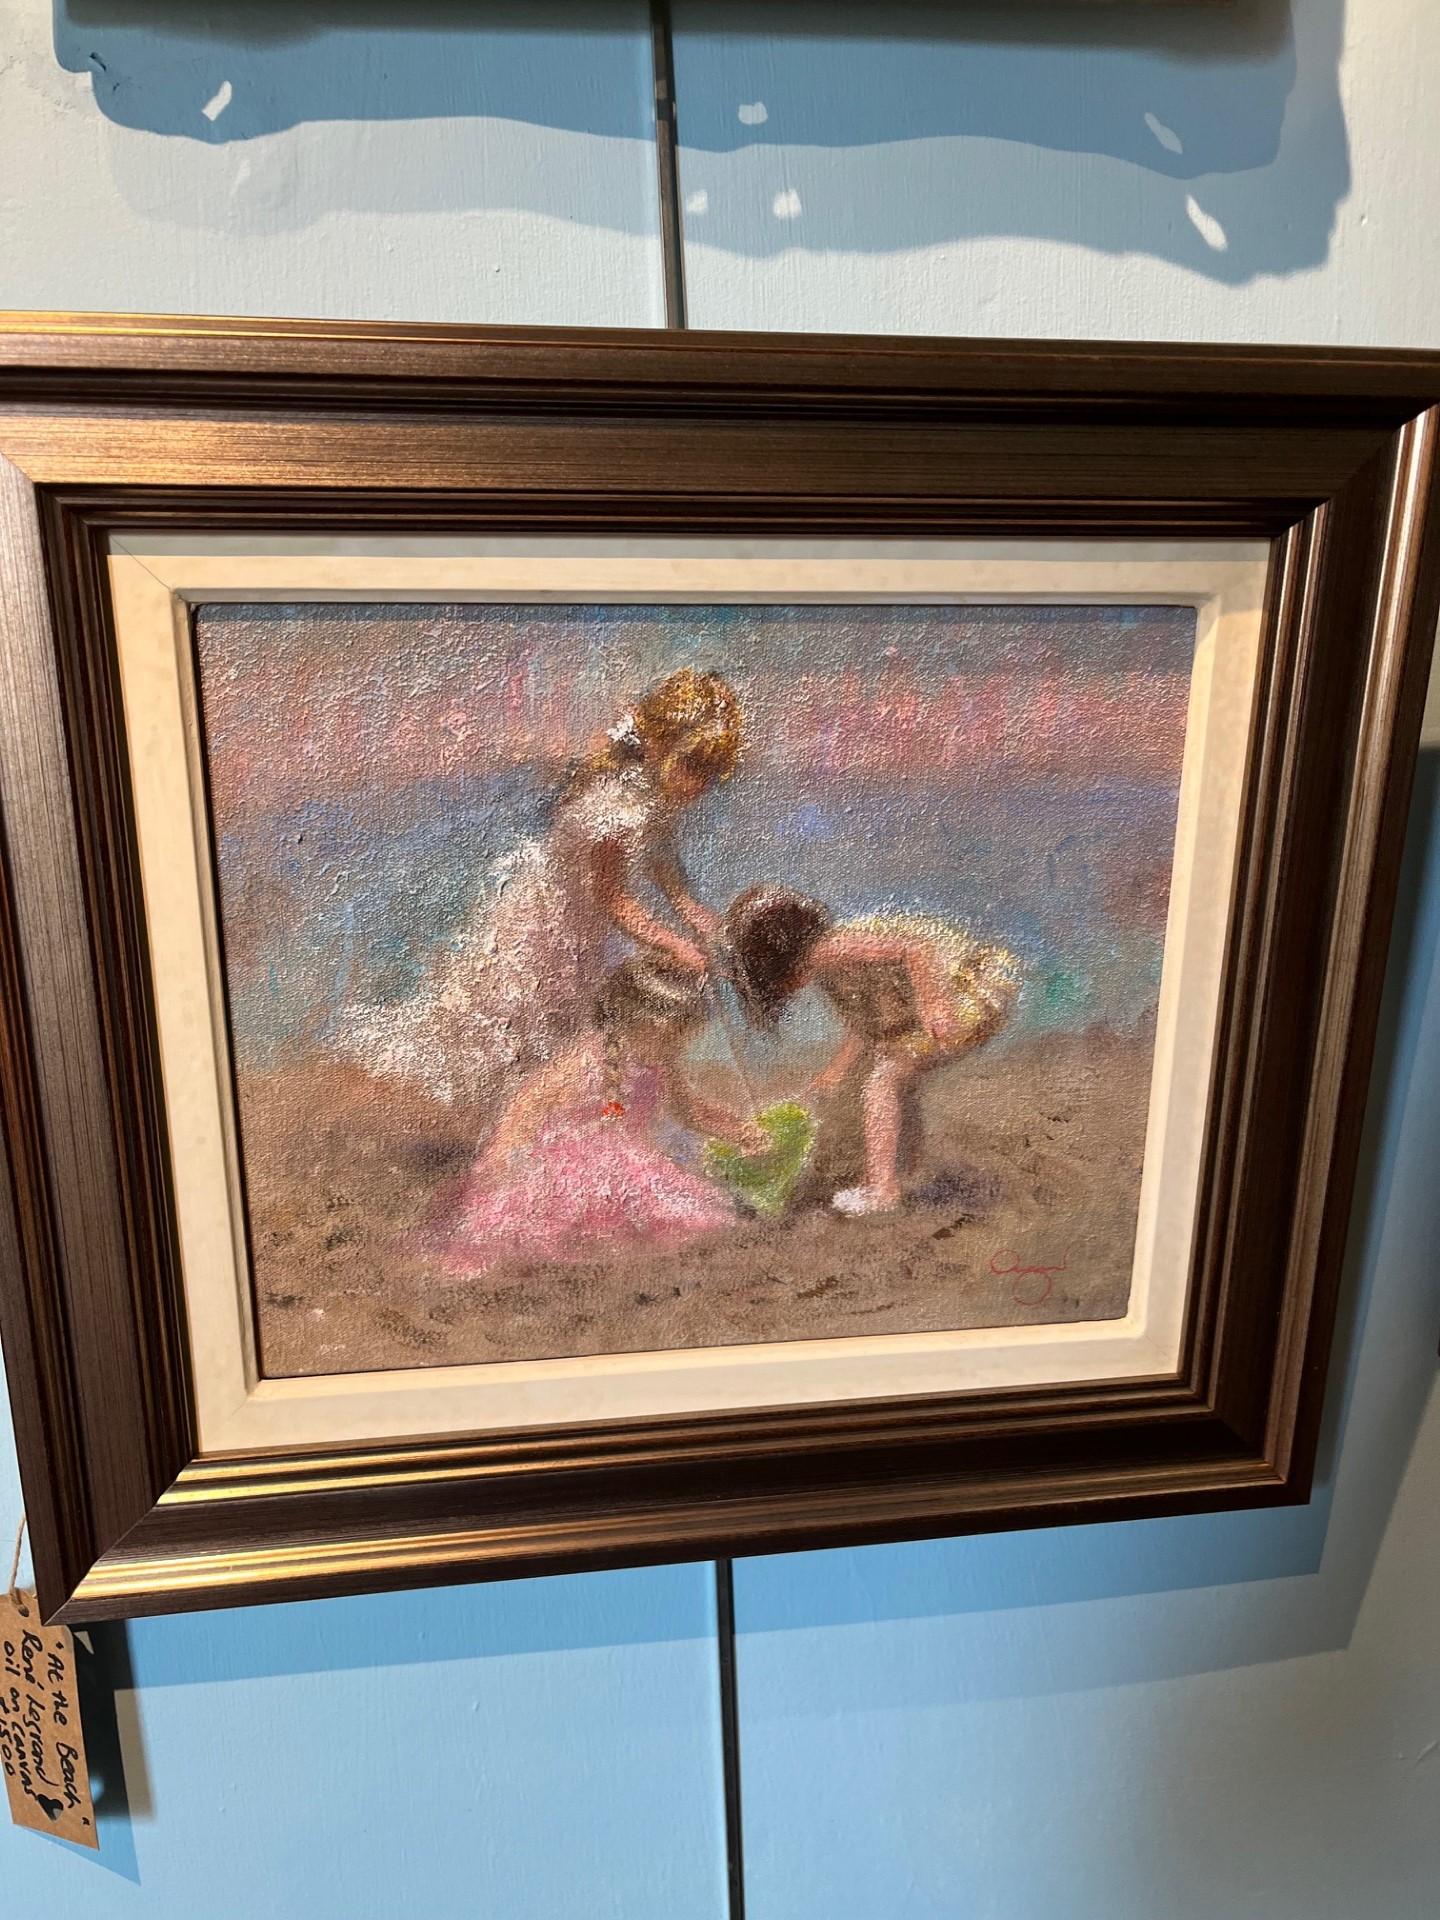 Drei Kinder beim Strand spielen mit Sandgräsern, impressionistisches Ölgemälde in Medium – Painting von Rene Jerome Legrand